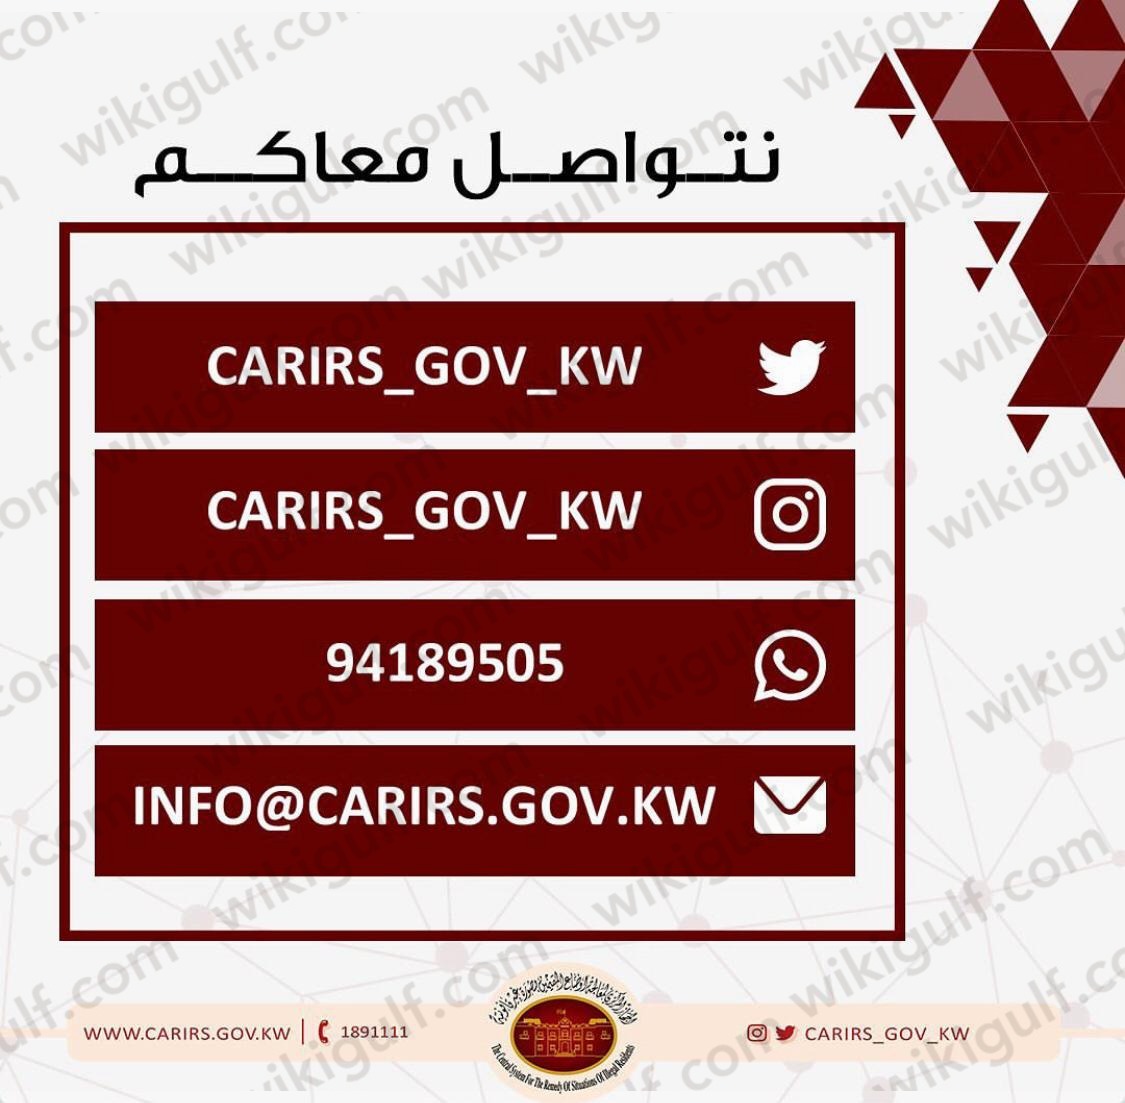 الأوراق المطلوبة لتجديد البطاقة الأمنية للبدون في الكويت